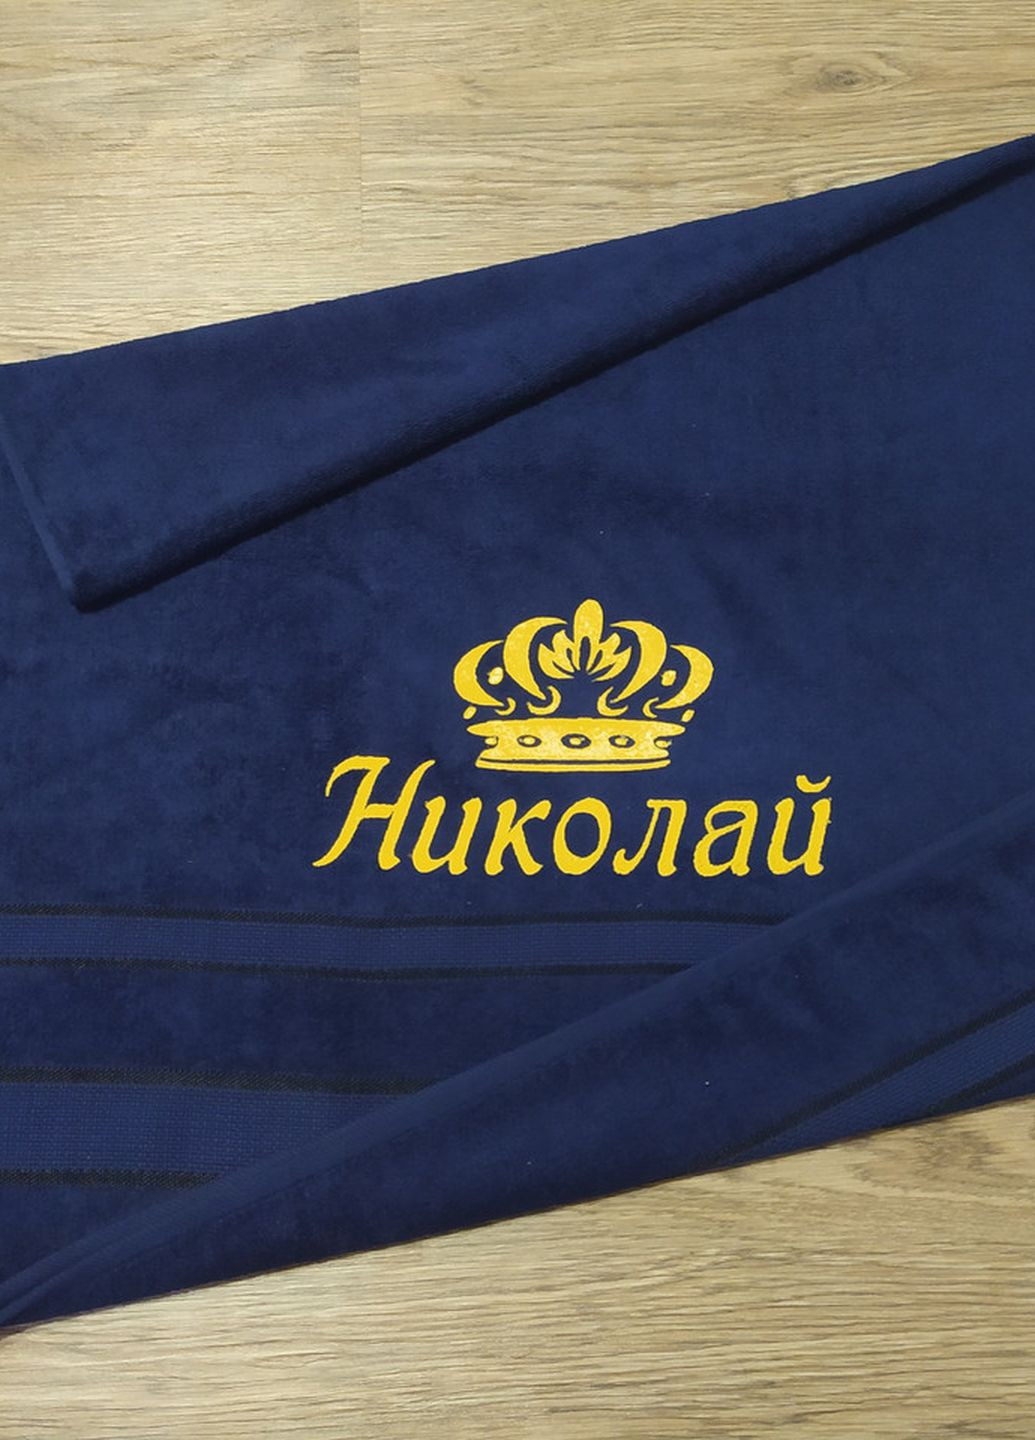 No Brand полотенце с именной вышивкой махровое банное 70*140 темно-синий николай 00025 однотонный темно-синий производство - Украина